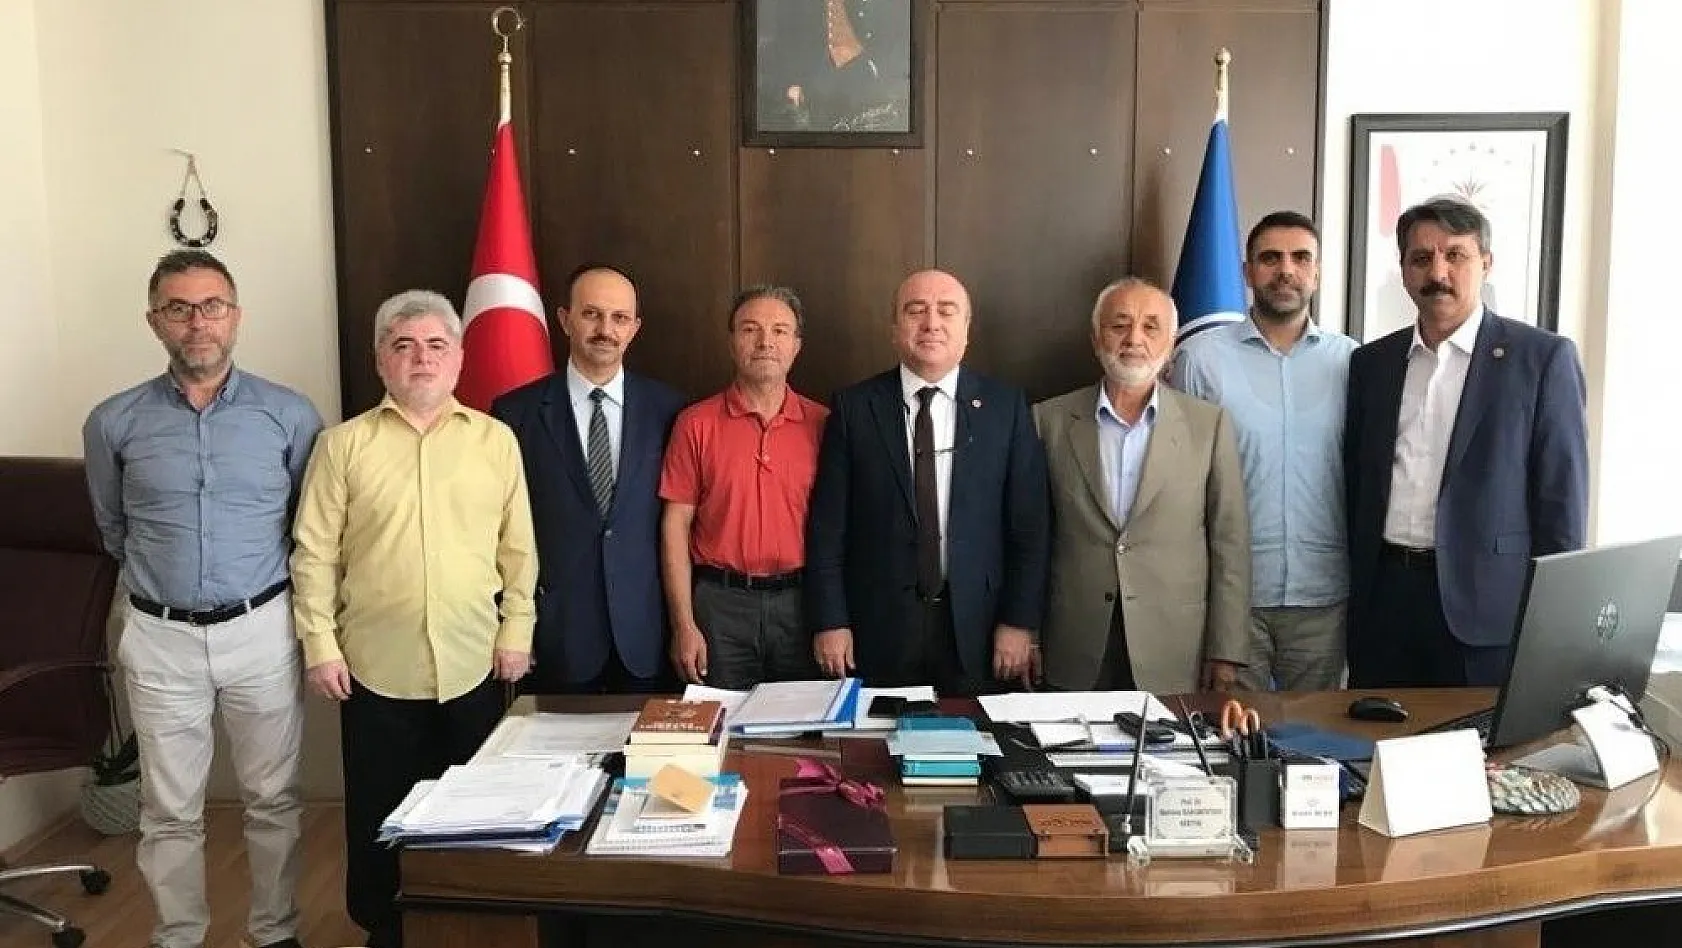 Gönüllü Kuruluşlar Erciyes ve Kayseri Üniversitelerinin rektörlerini ziyaret etti
